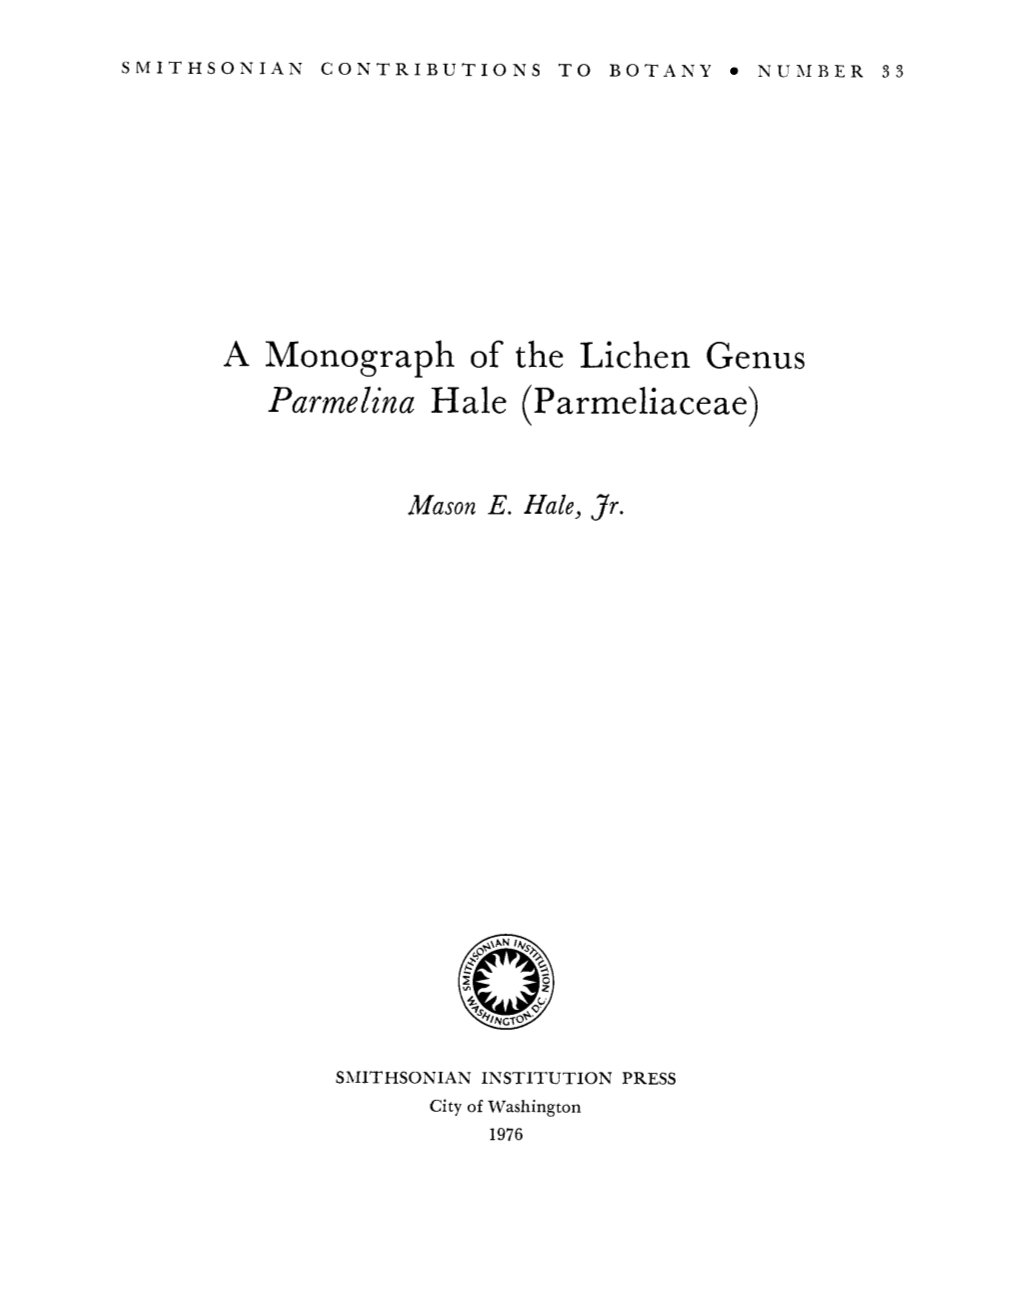 A Monograph of the Lichen Genus Parmelina Hale (Parmeliaceae)